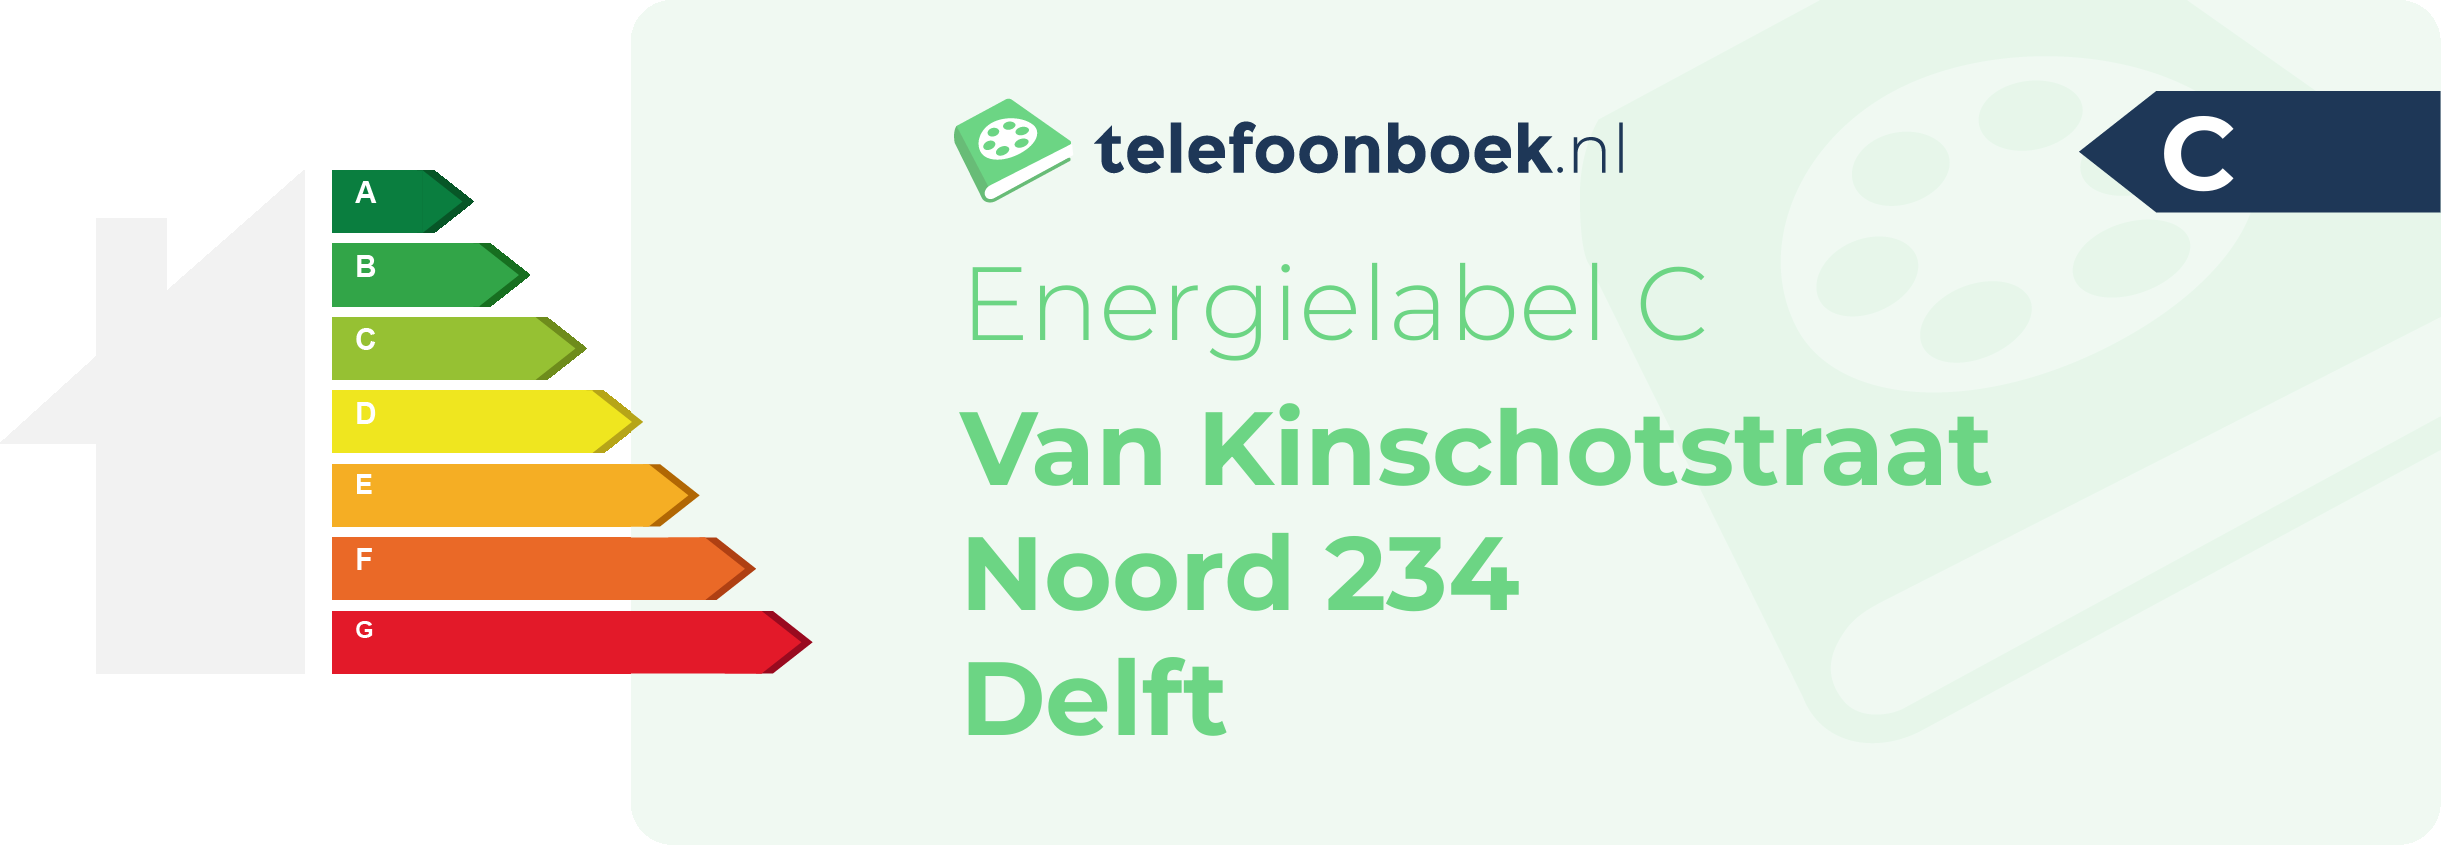 Energielabel Van Kinschotstraat Noord 234 Delft